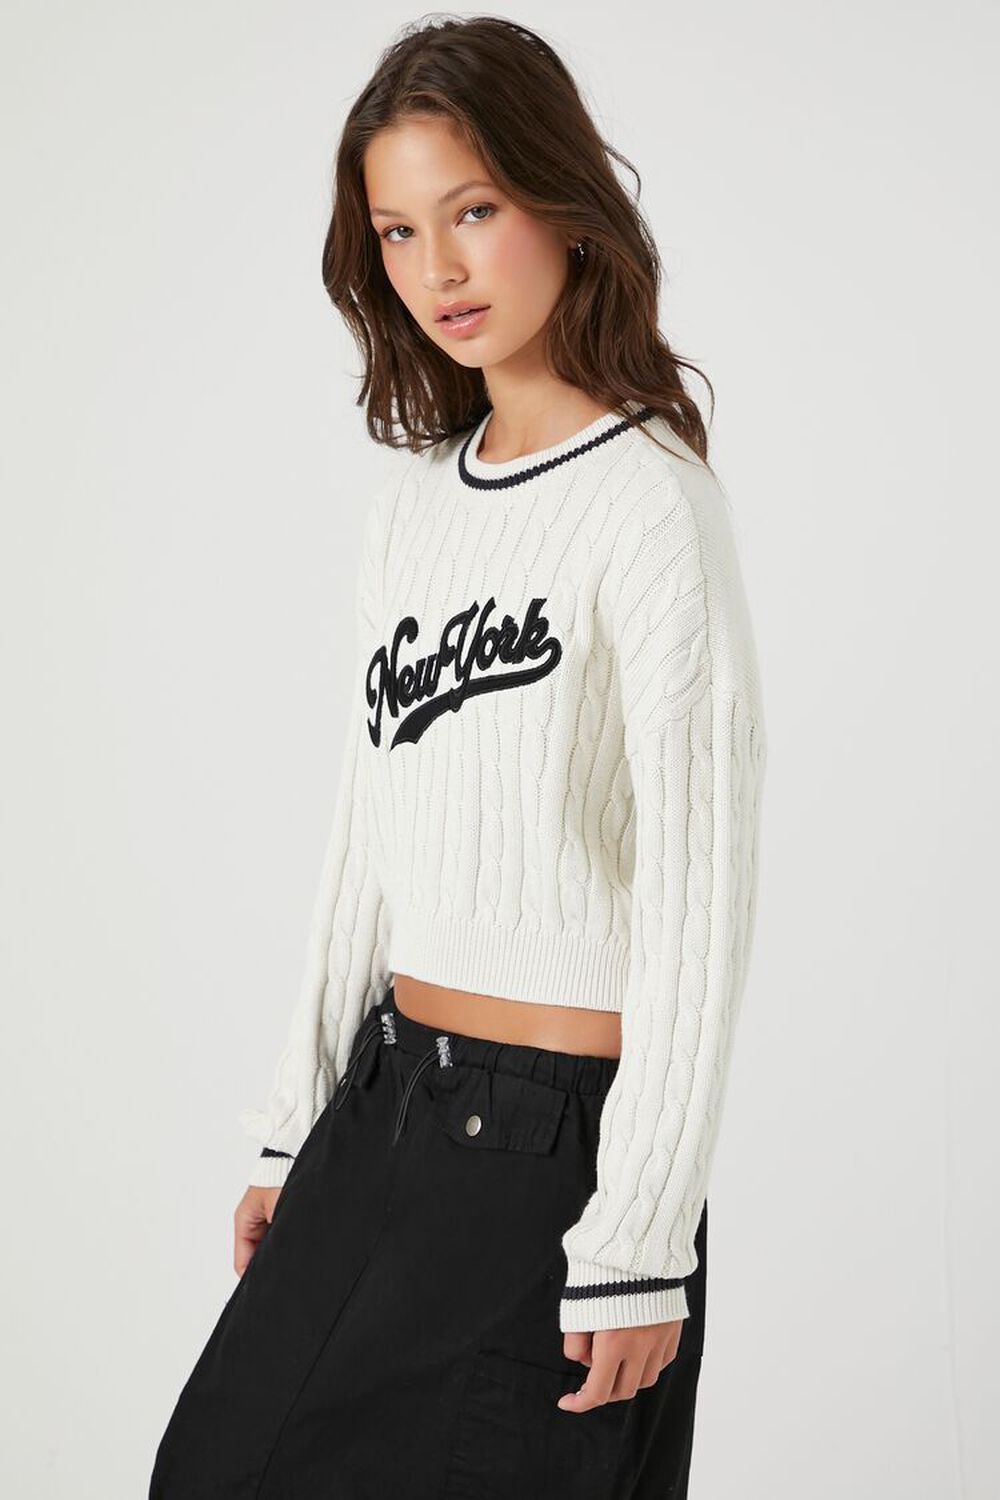 New York Yankees Sweatshirt Womens White Cord Cotton Crewneck Sweater New